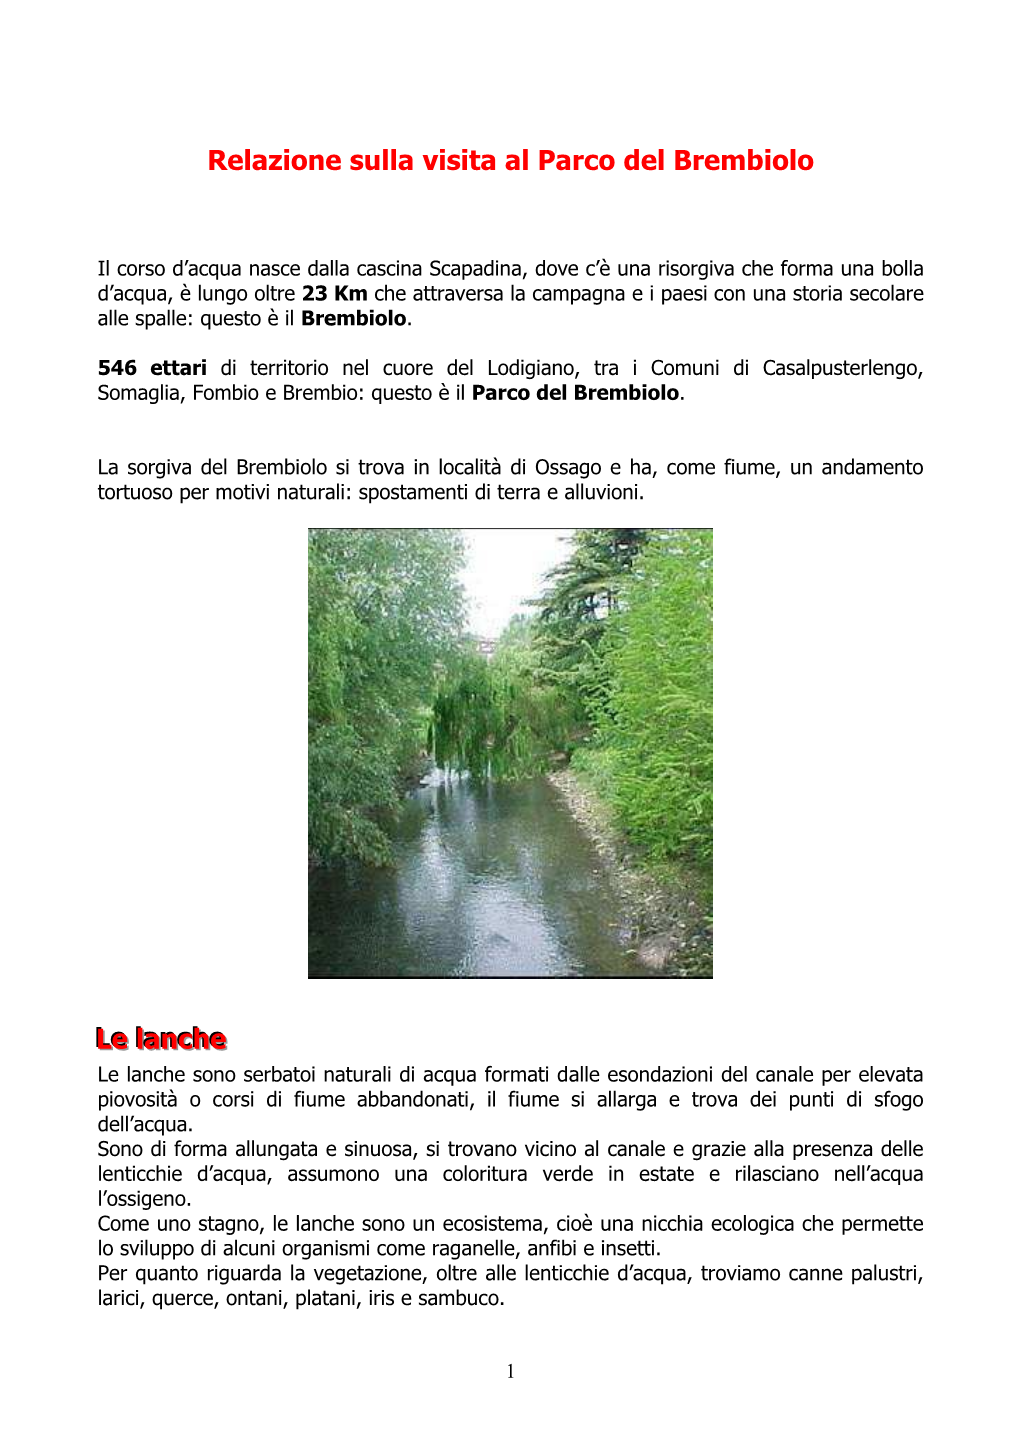 Relazione Sulla Visita Al Parco Del Brembiolo Le Lanche